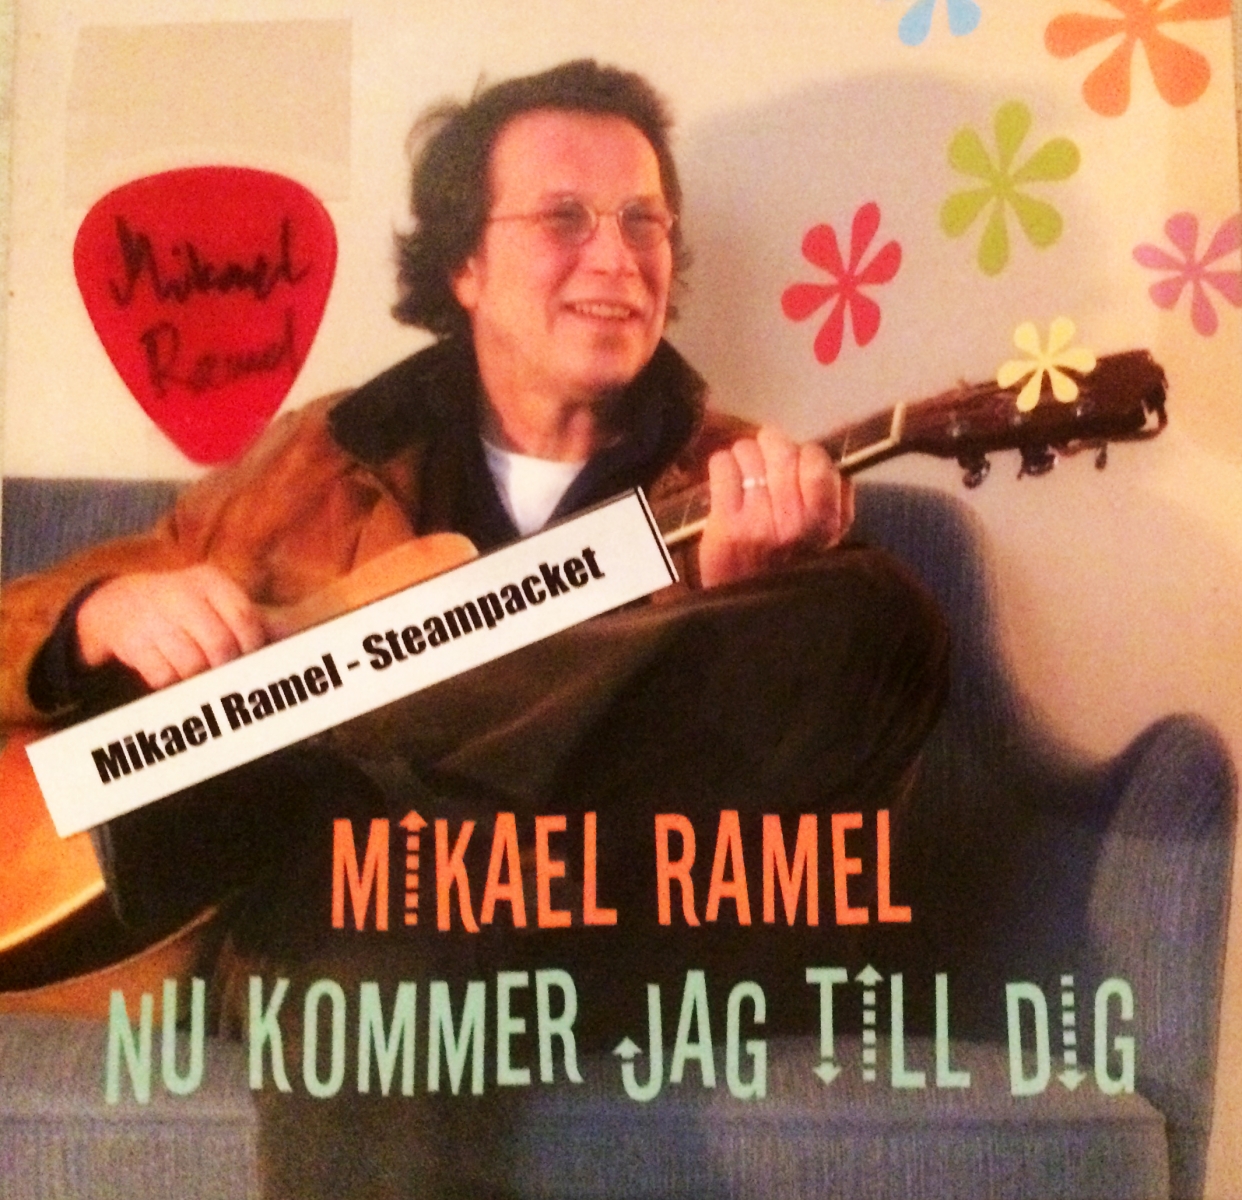 Mikael Ramel